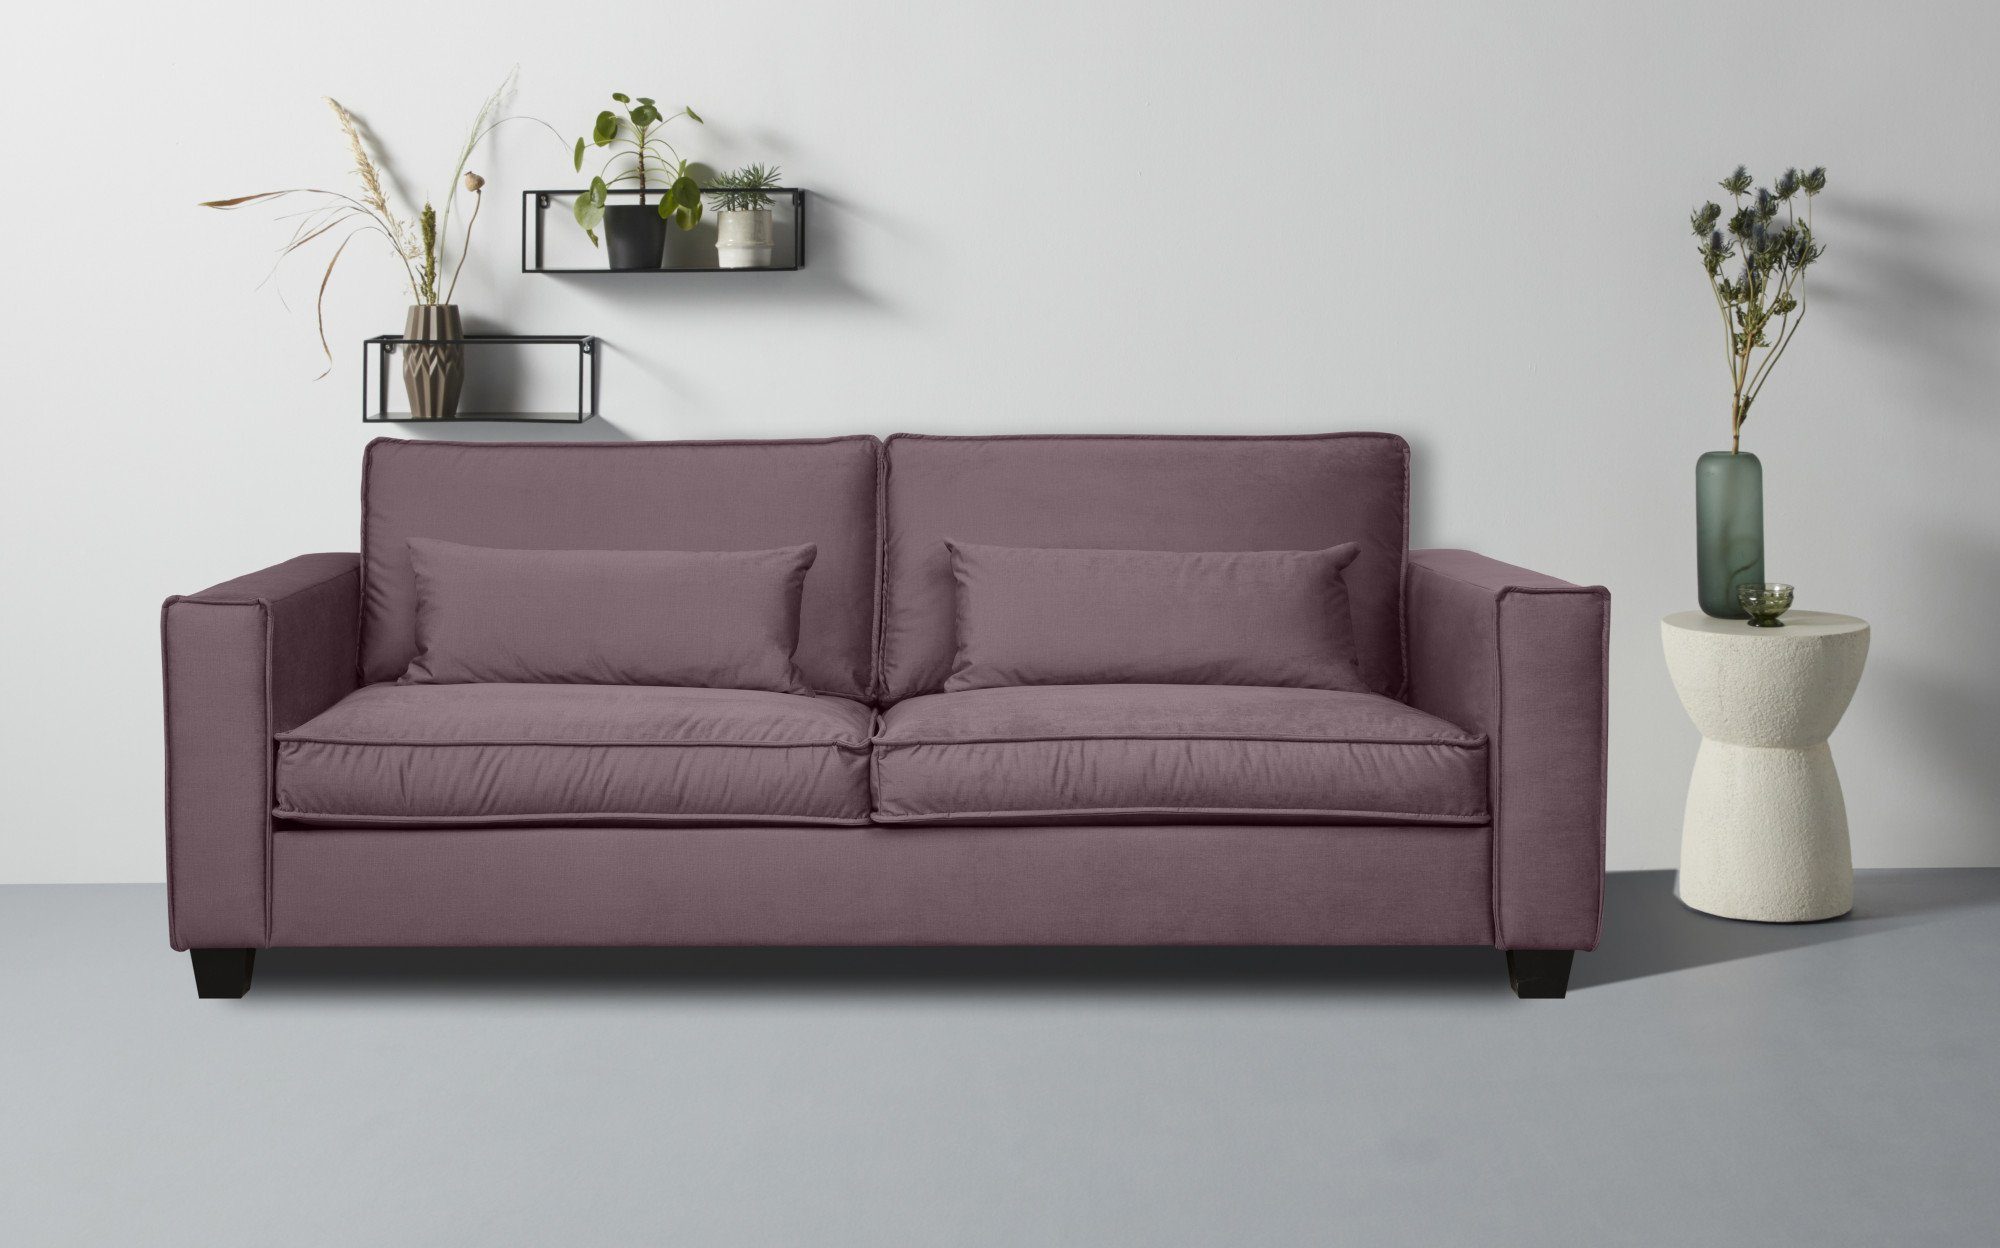 Tilques, pink viele bequeme verfügbar Home affaire Farben violet 3-Sitzer Sitzgelegenheiten,